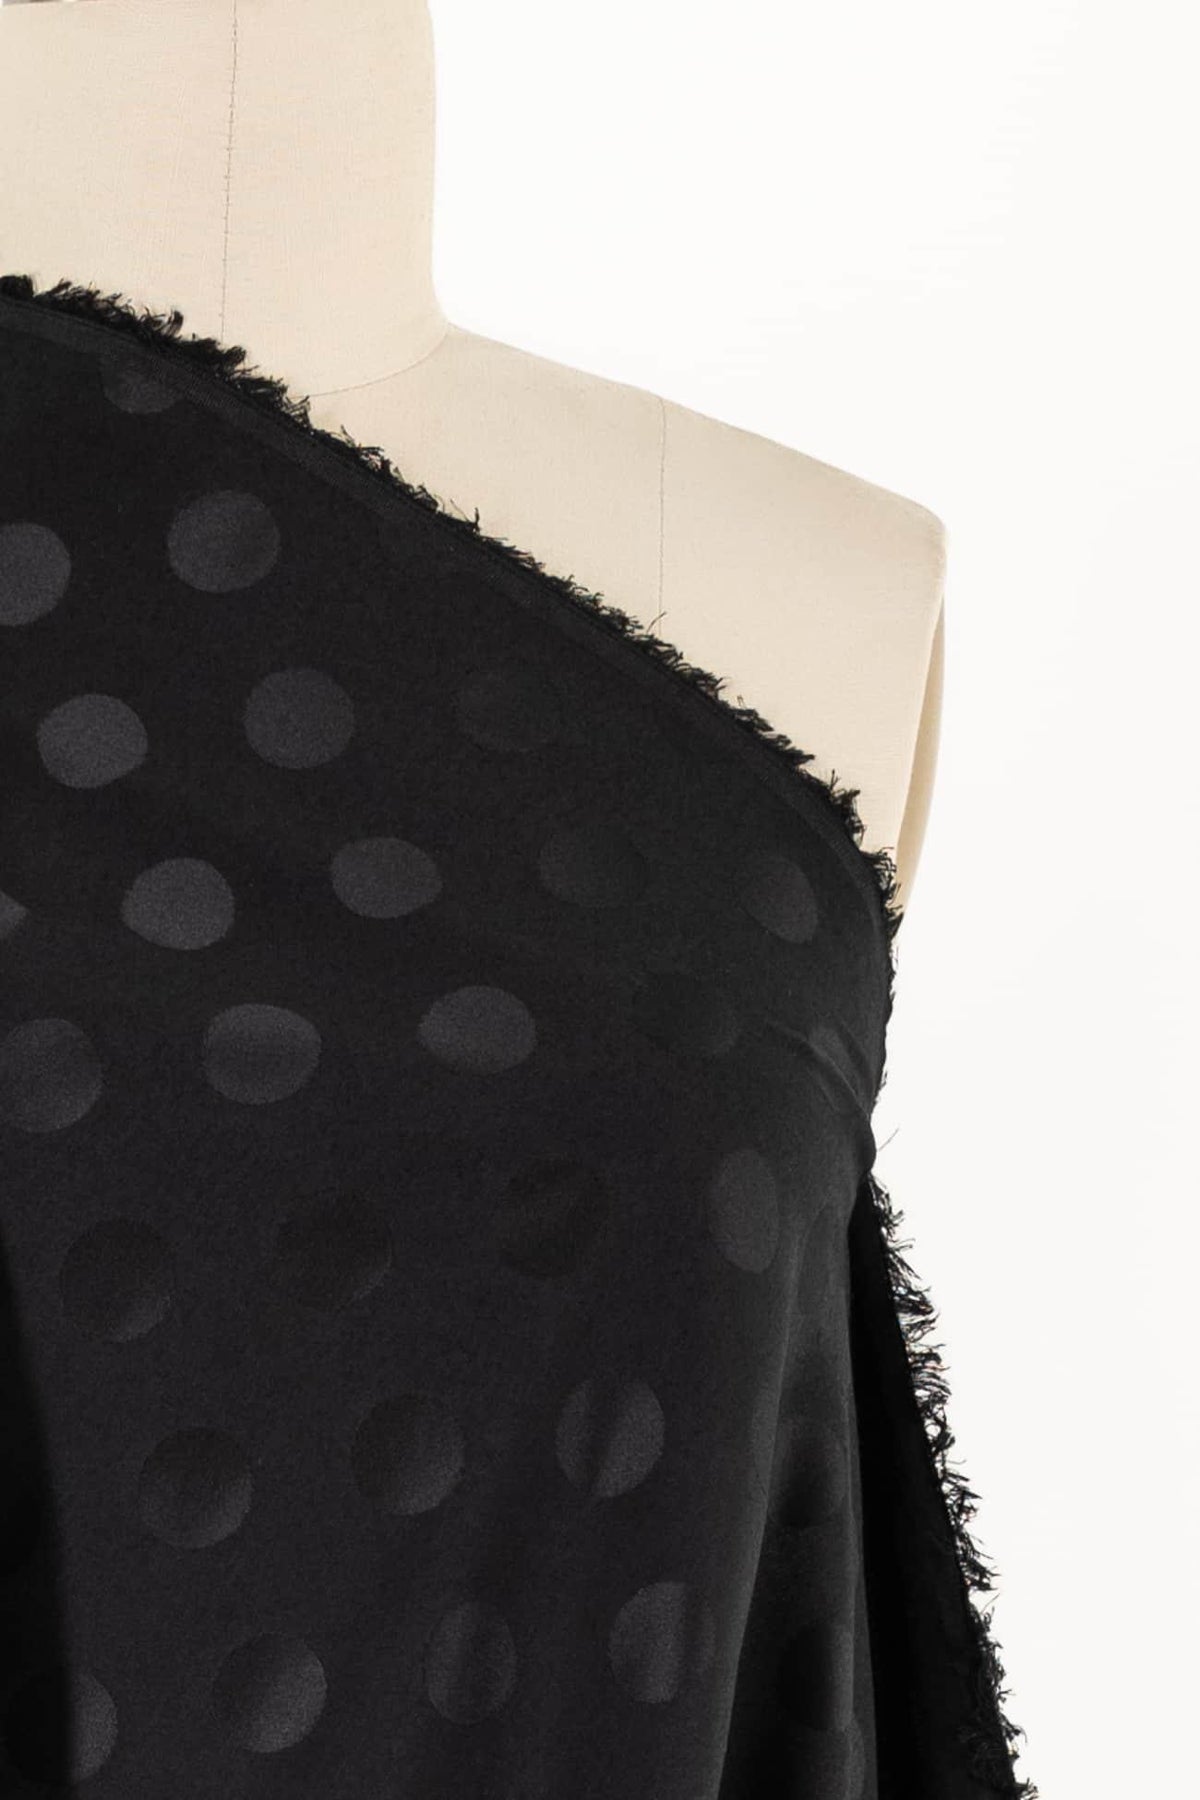 Ebony Moon Dots Jacquard Woven - Marcy Tilton Fabrics